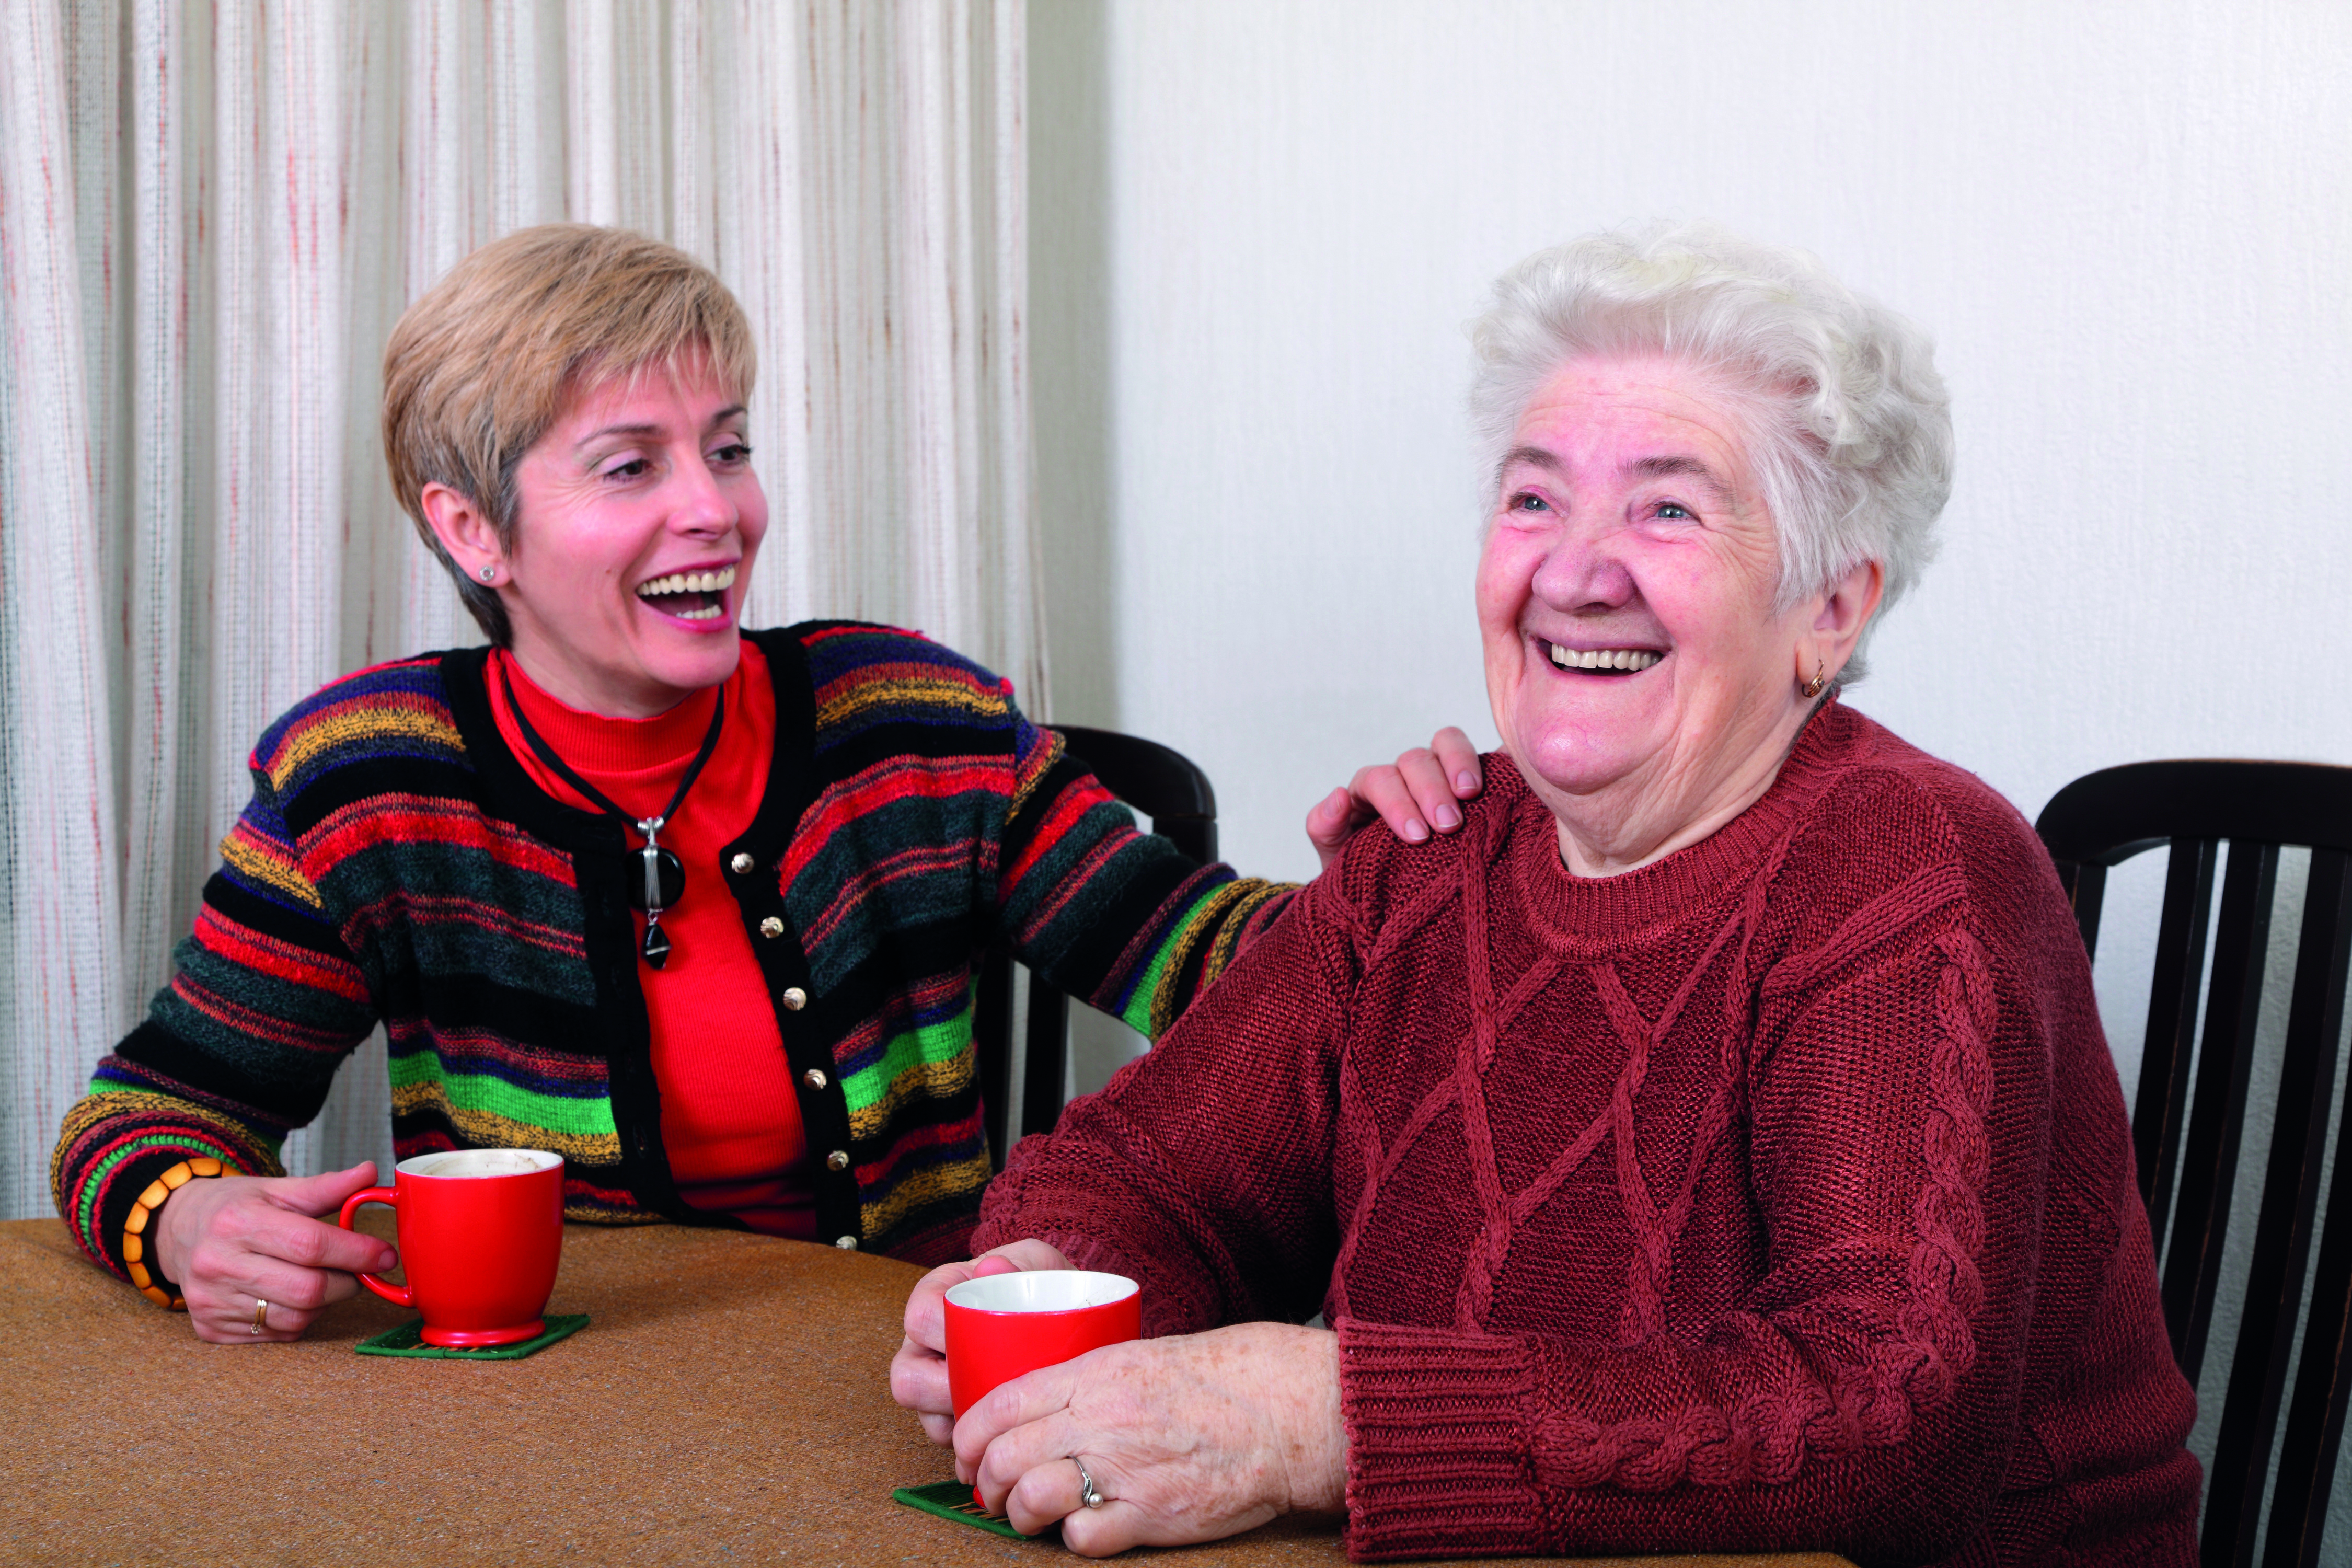 Auf dem Foto ist eine jüngere und eine ältere Frau an einem Tich zu sehen mit einer Tasse in der Hand. Die beiden freuen sich und sind am Lachen.